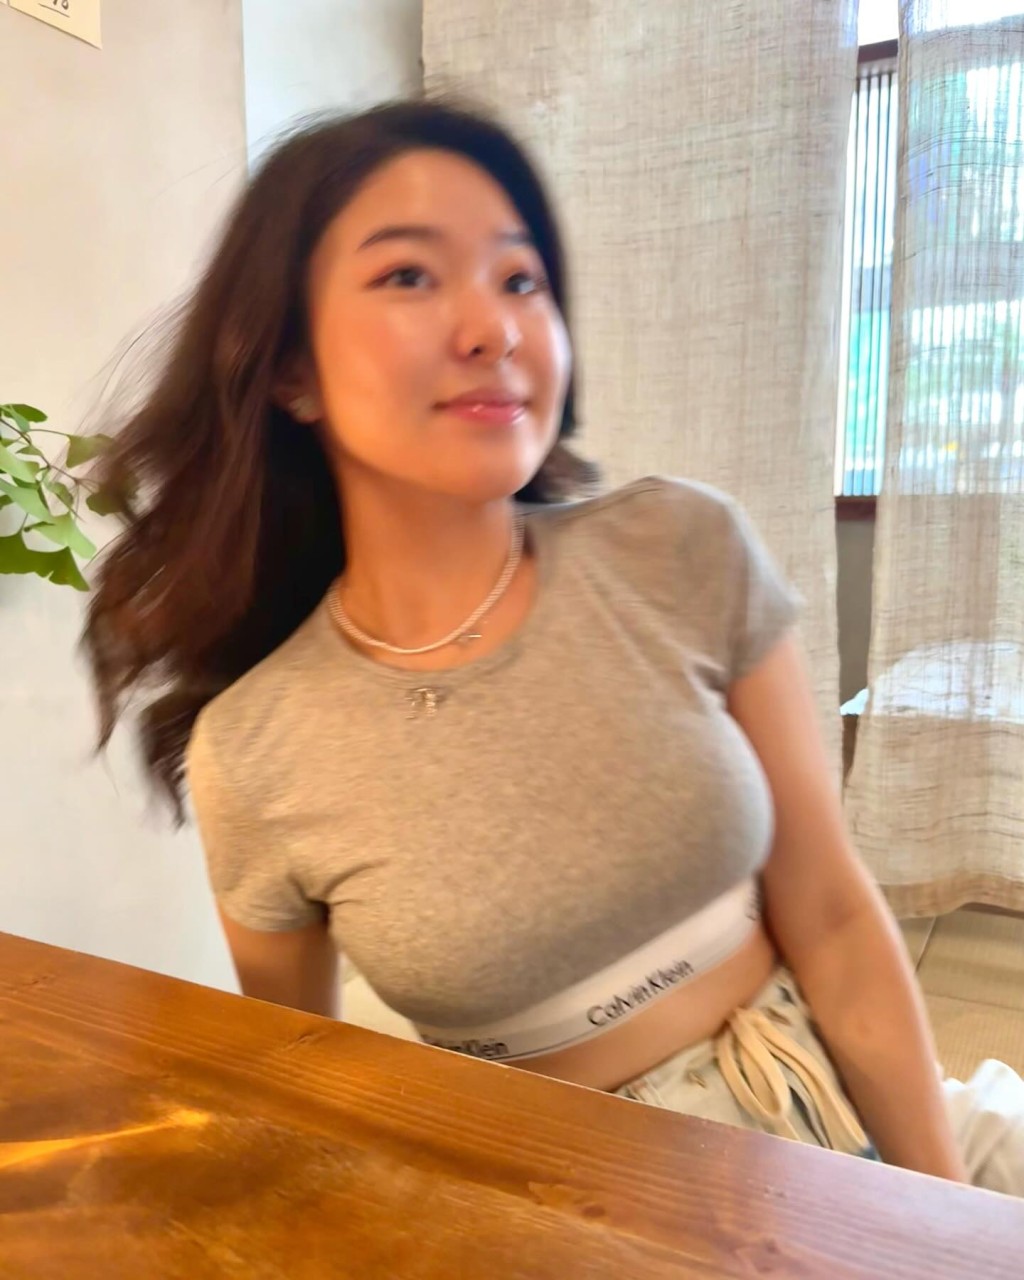 许惠菁昨日（2日）分享一辑身穿紧身Crop top的照片。